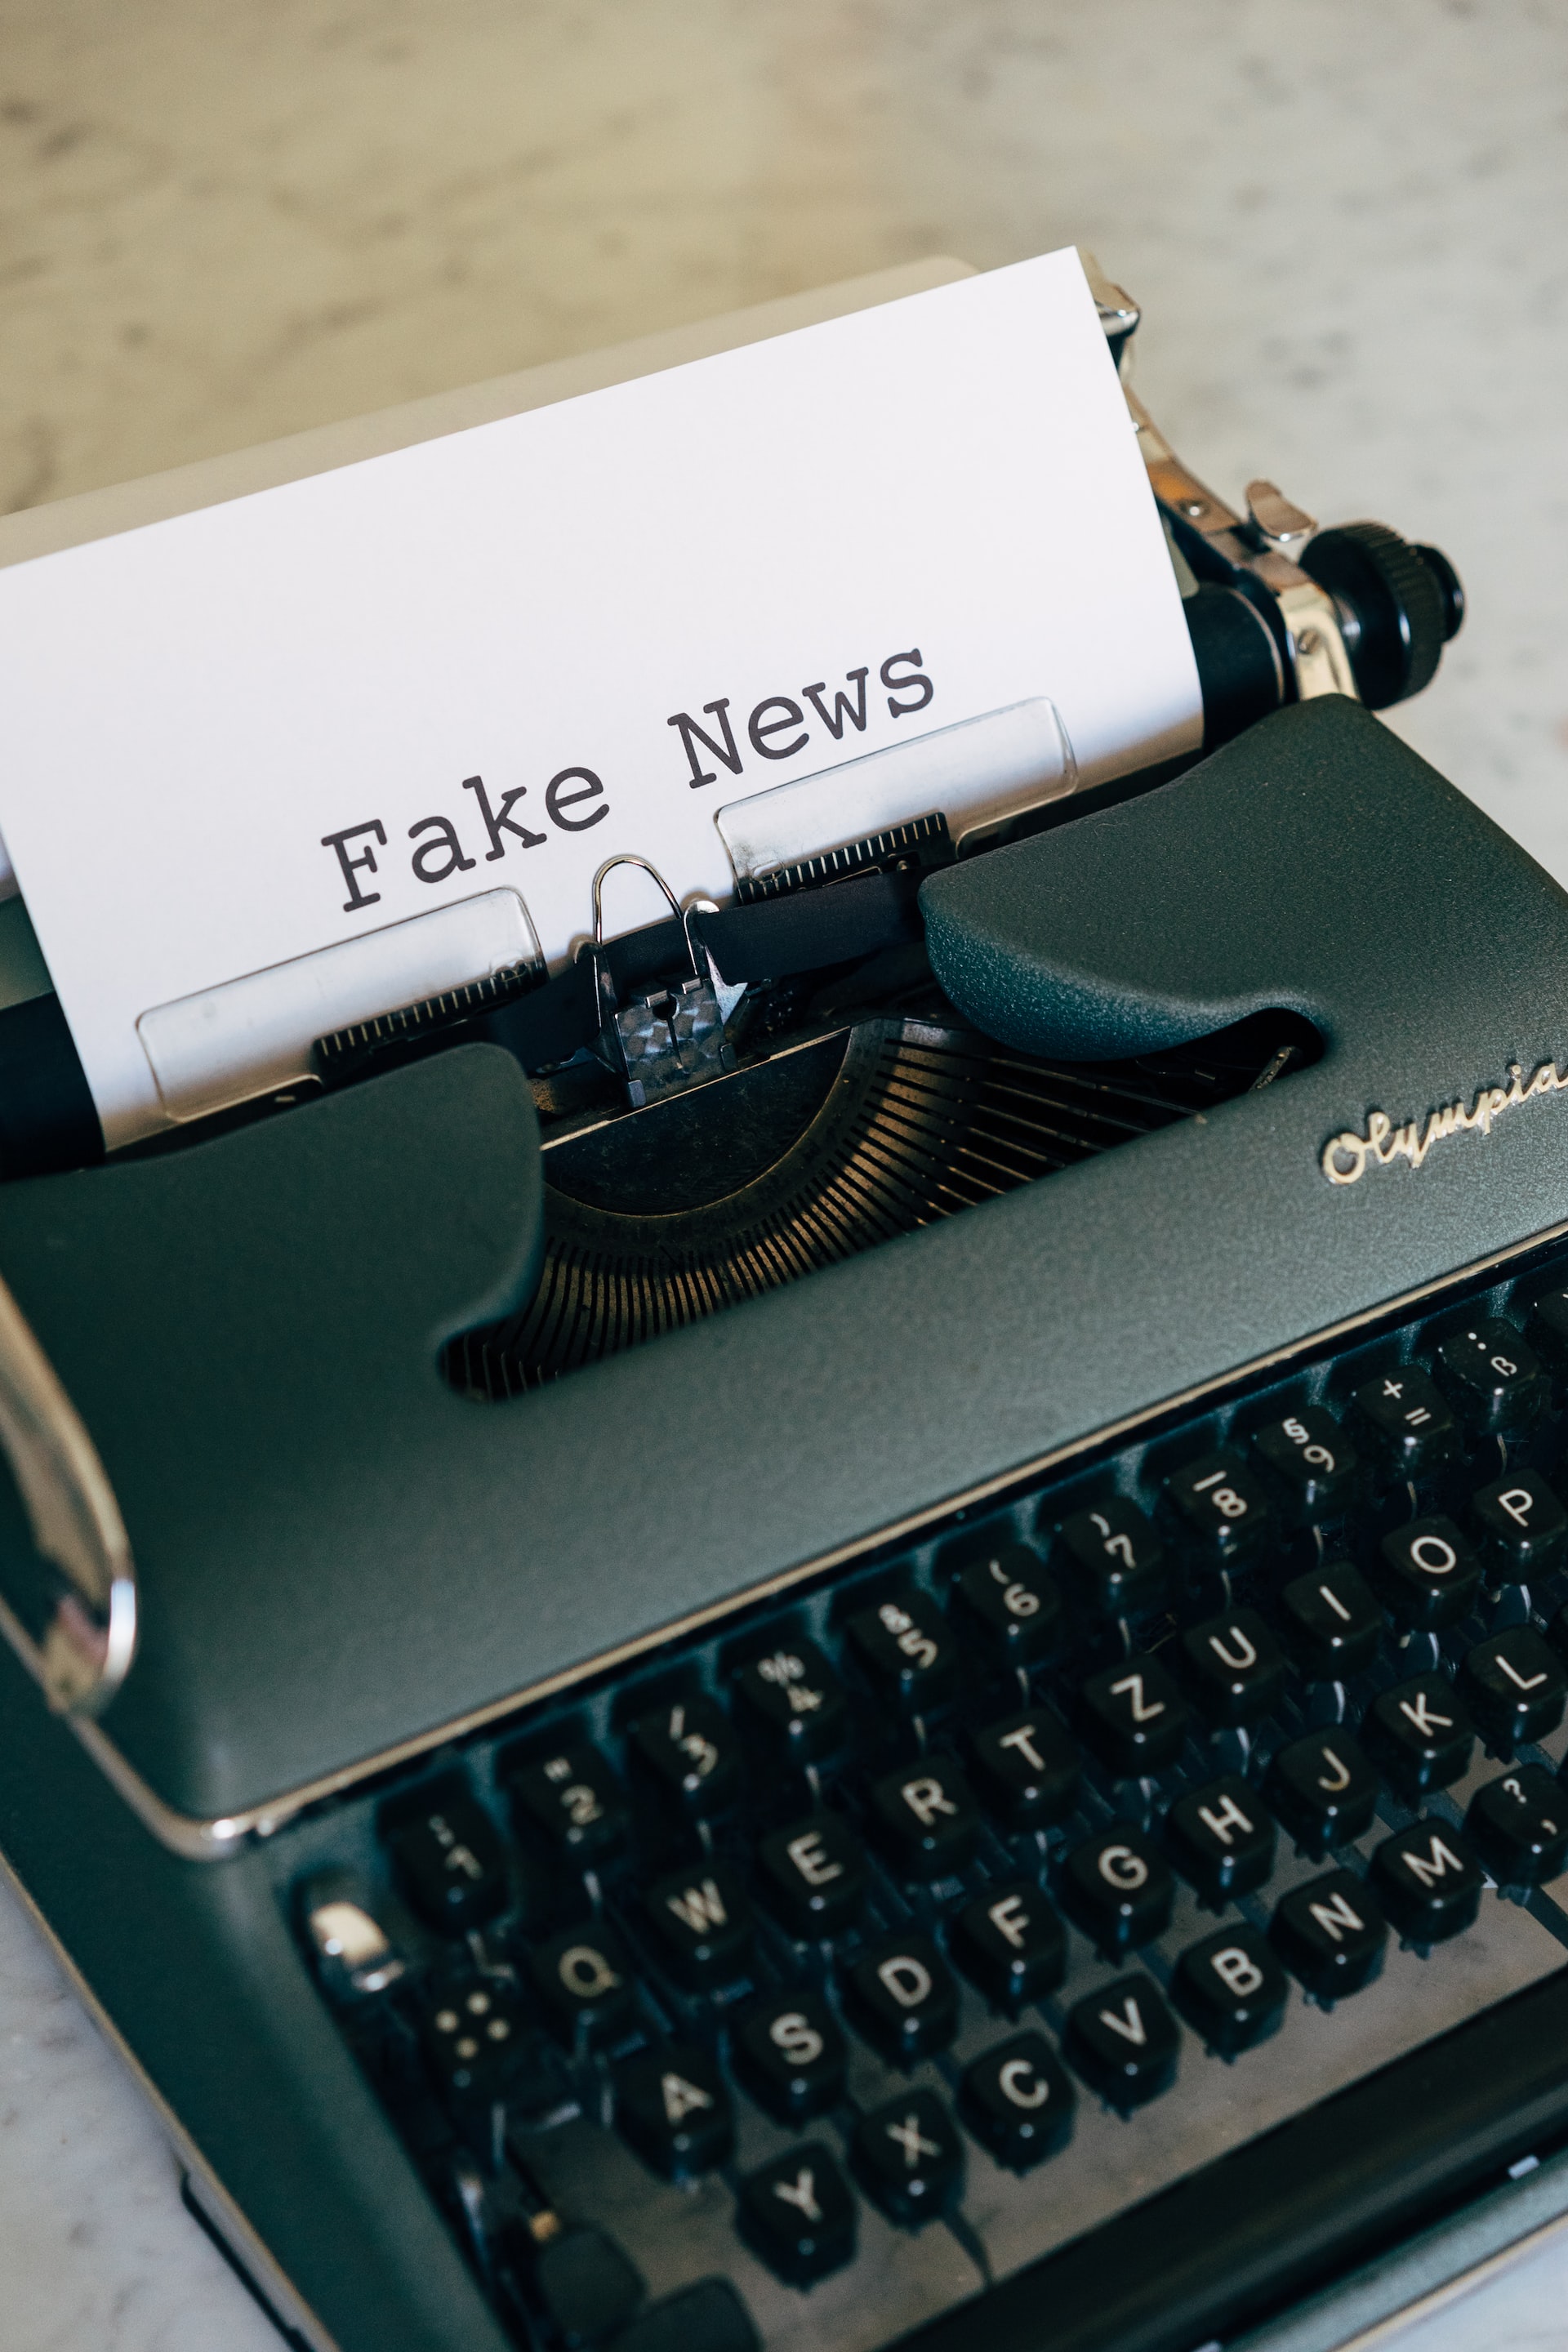 Writing machine with fake news written